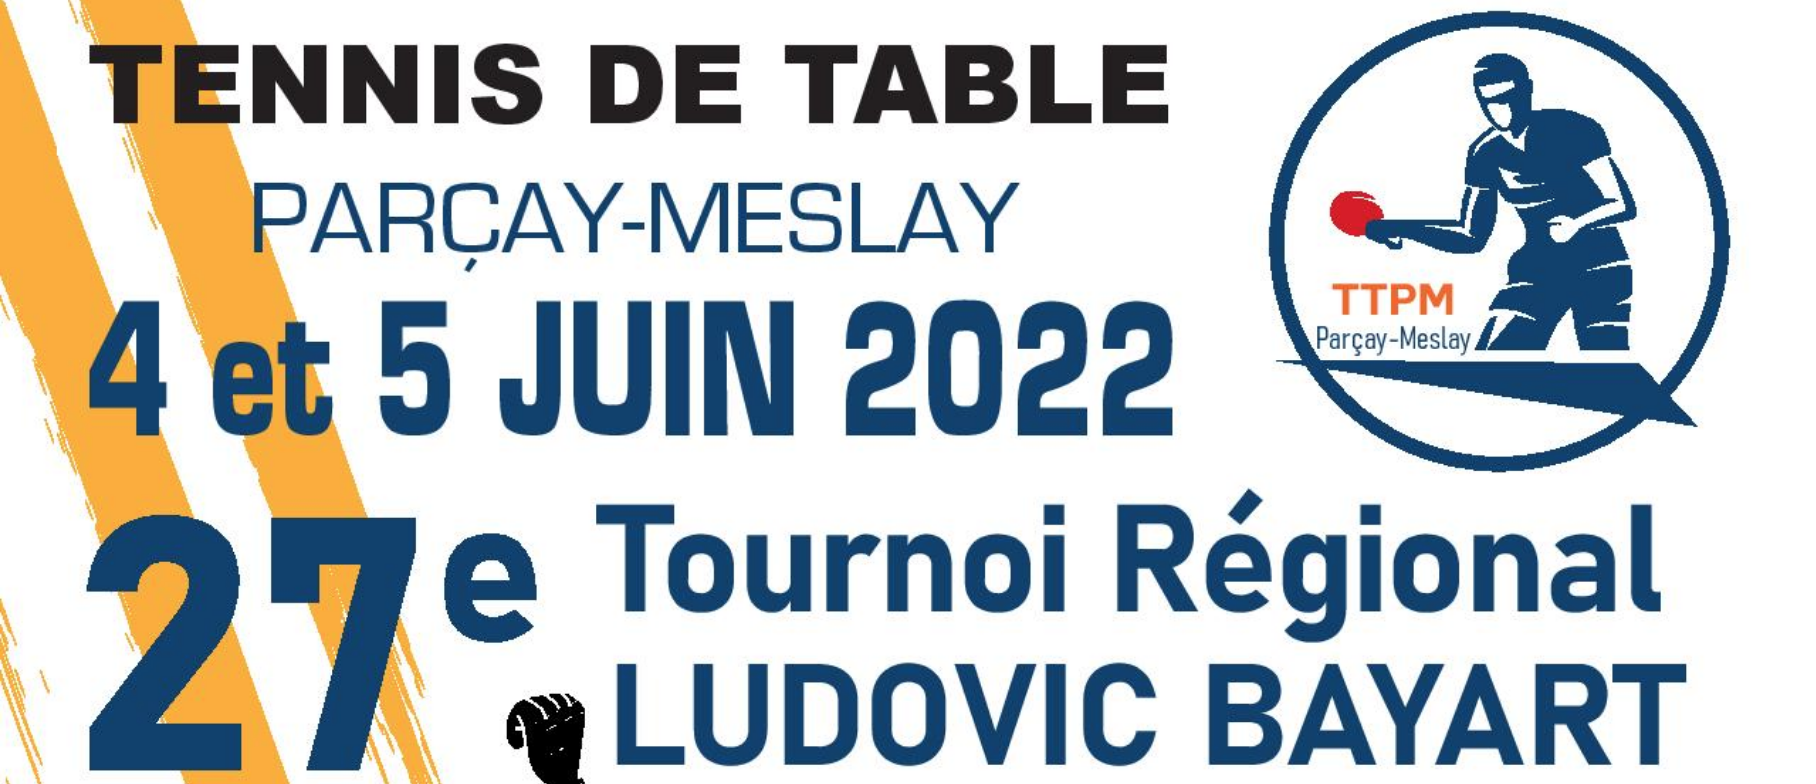 Tournoi Parçay Meslay 2022